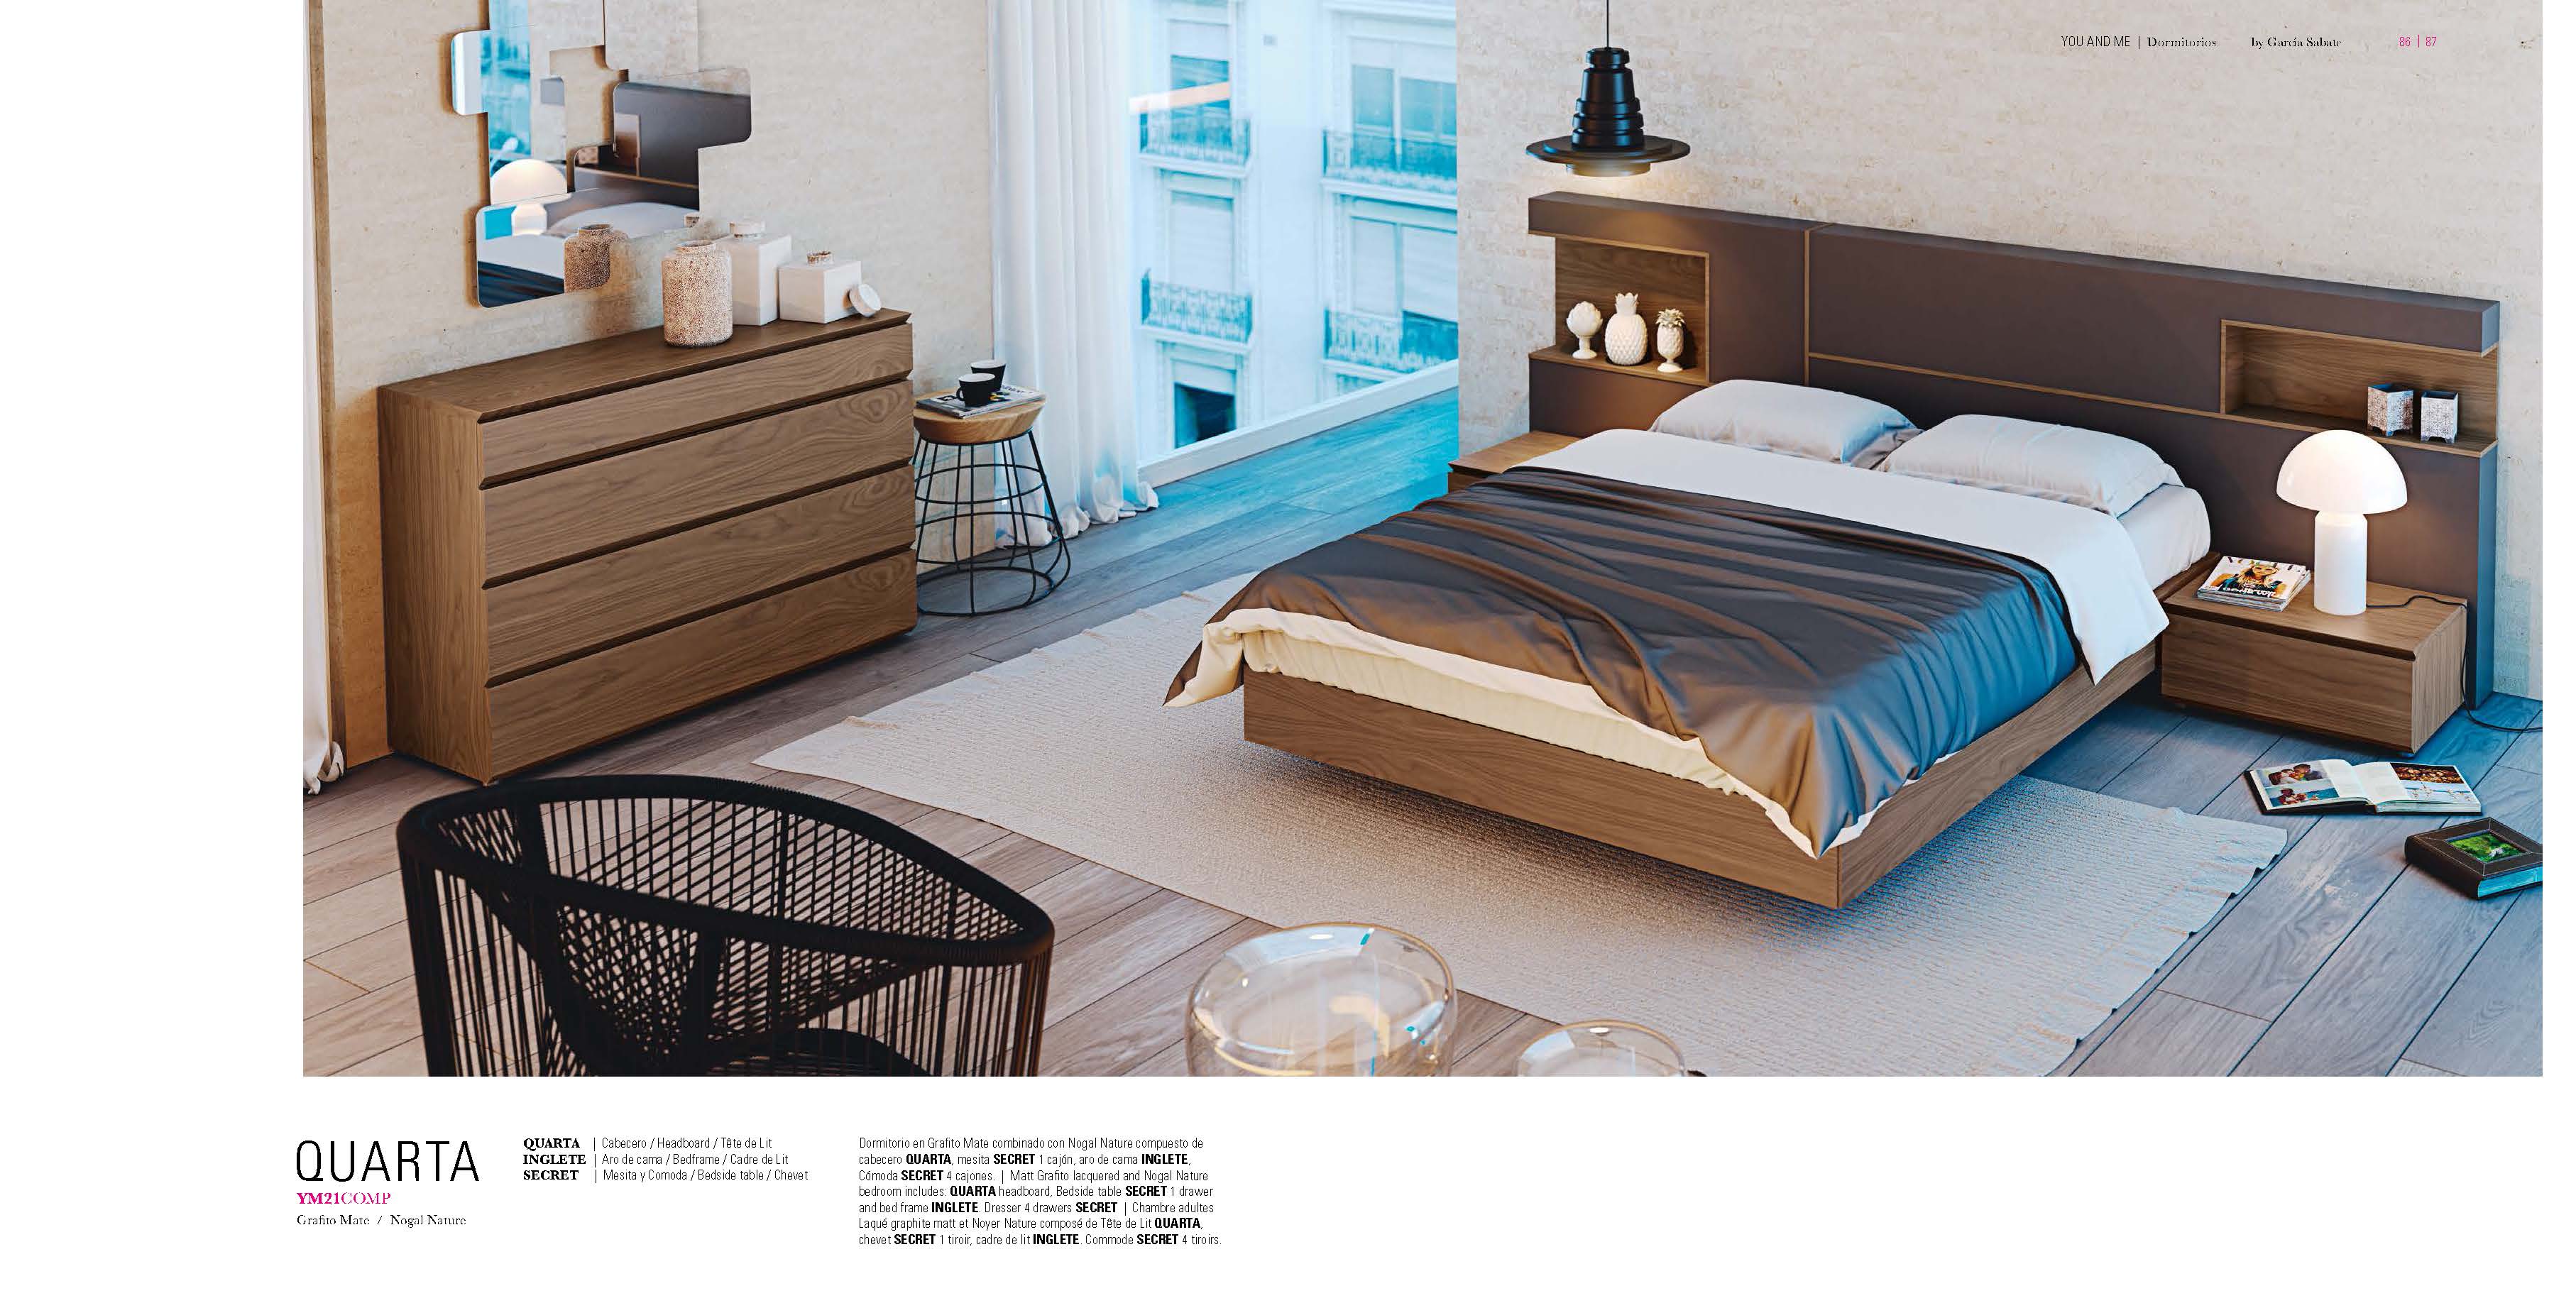 Bedroom Furniture Beds YM21